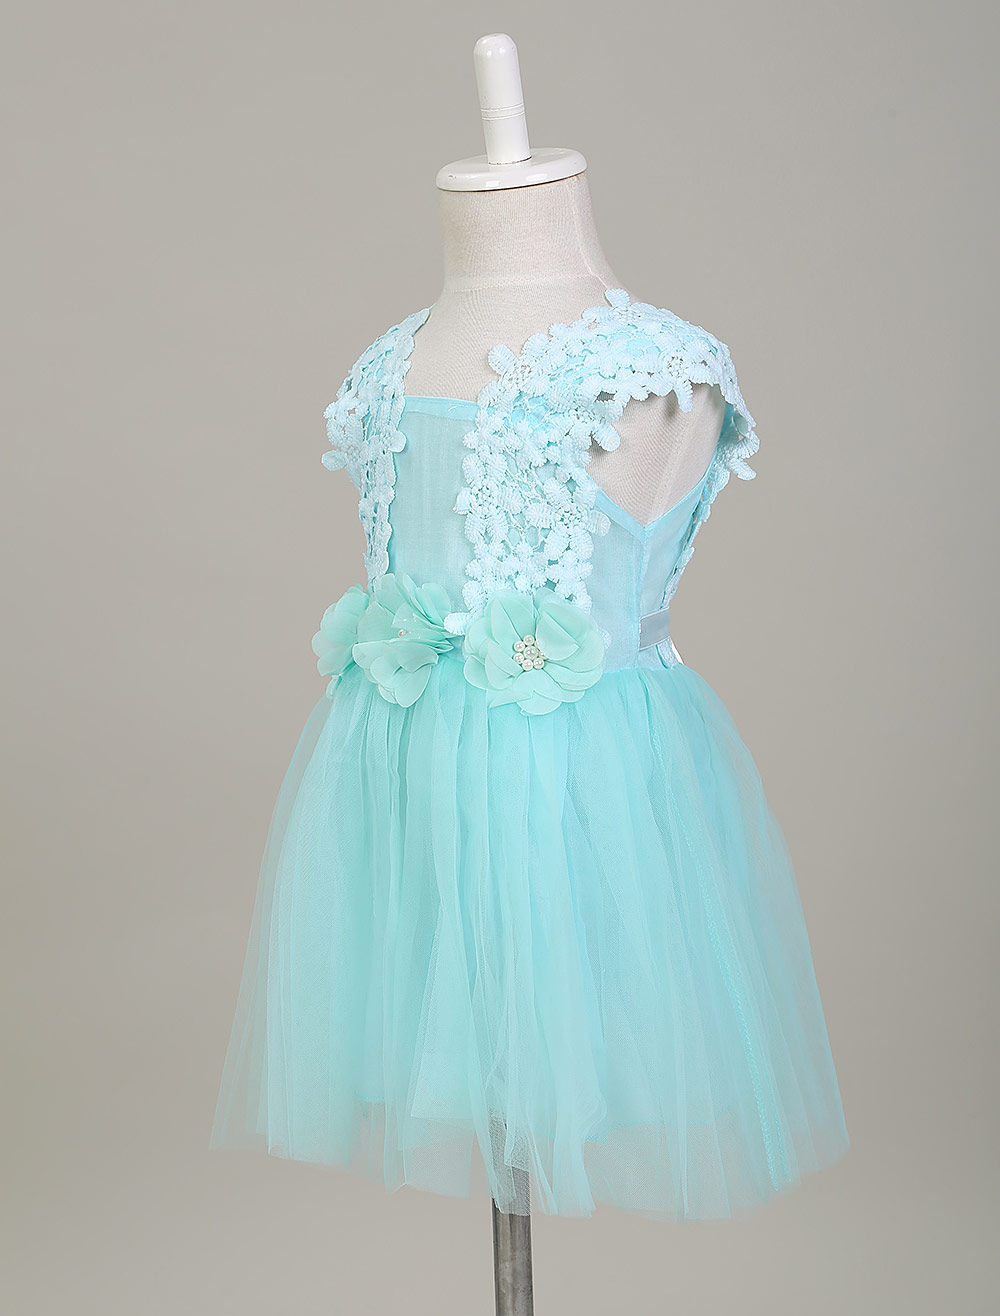 Tutu Flower Girl Dresses Lace Applique Toddler's Pageant Dress Peach ...